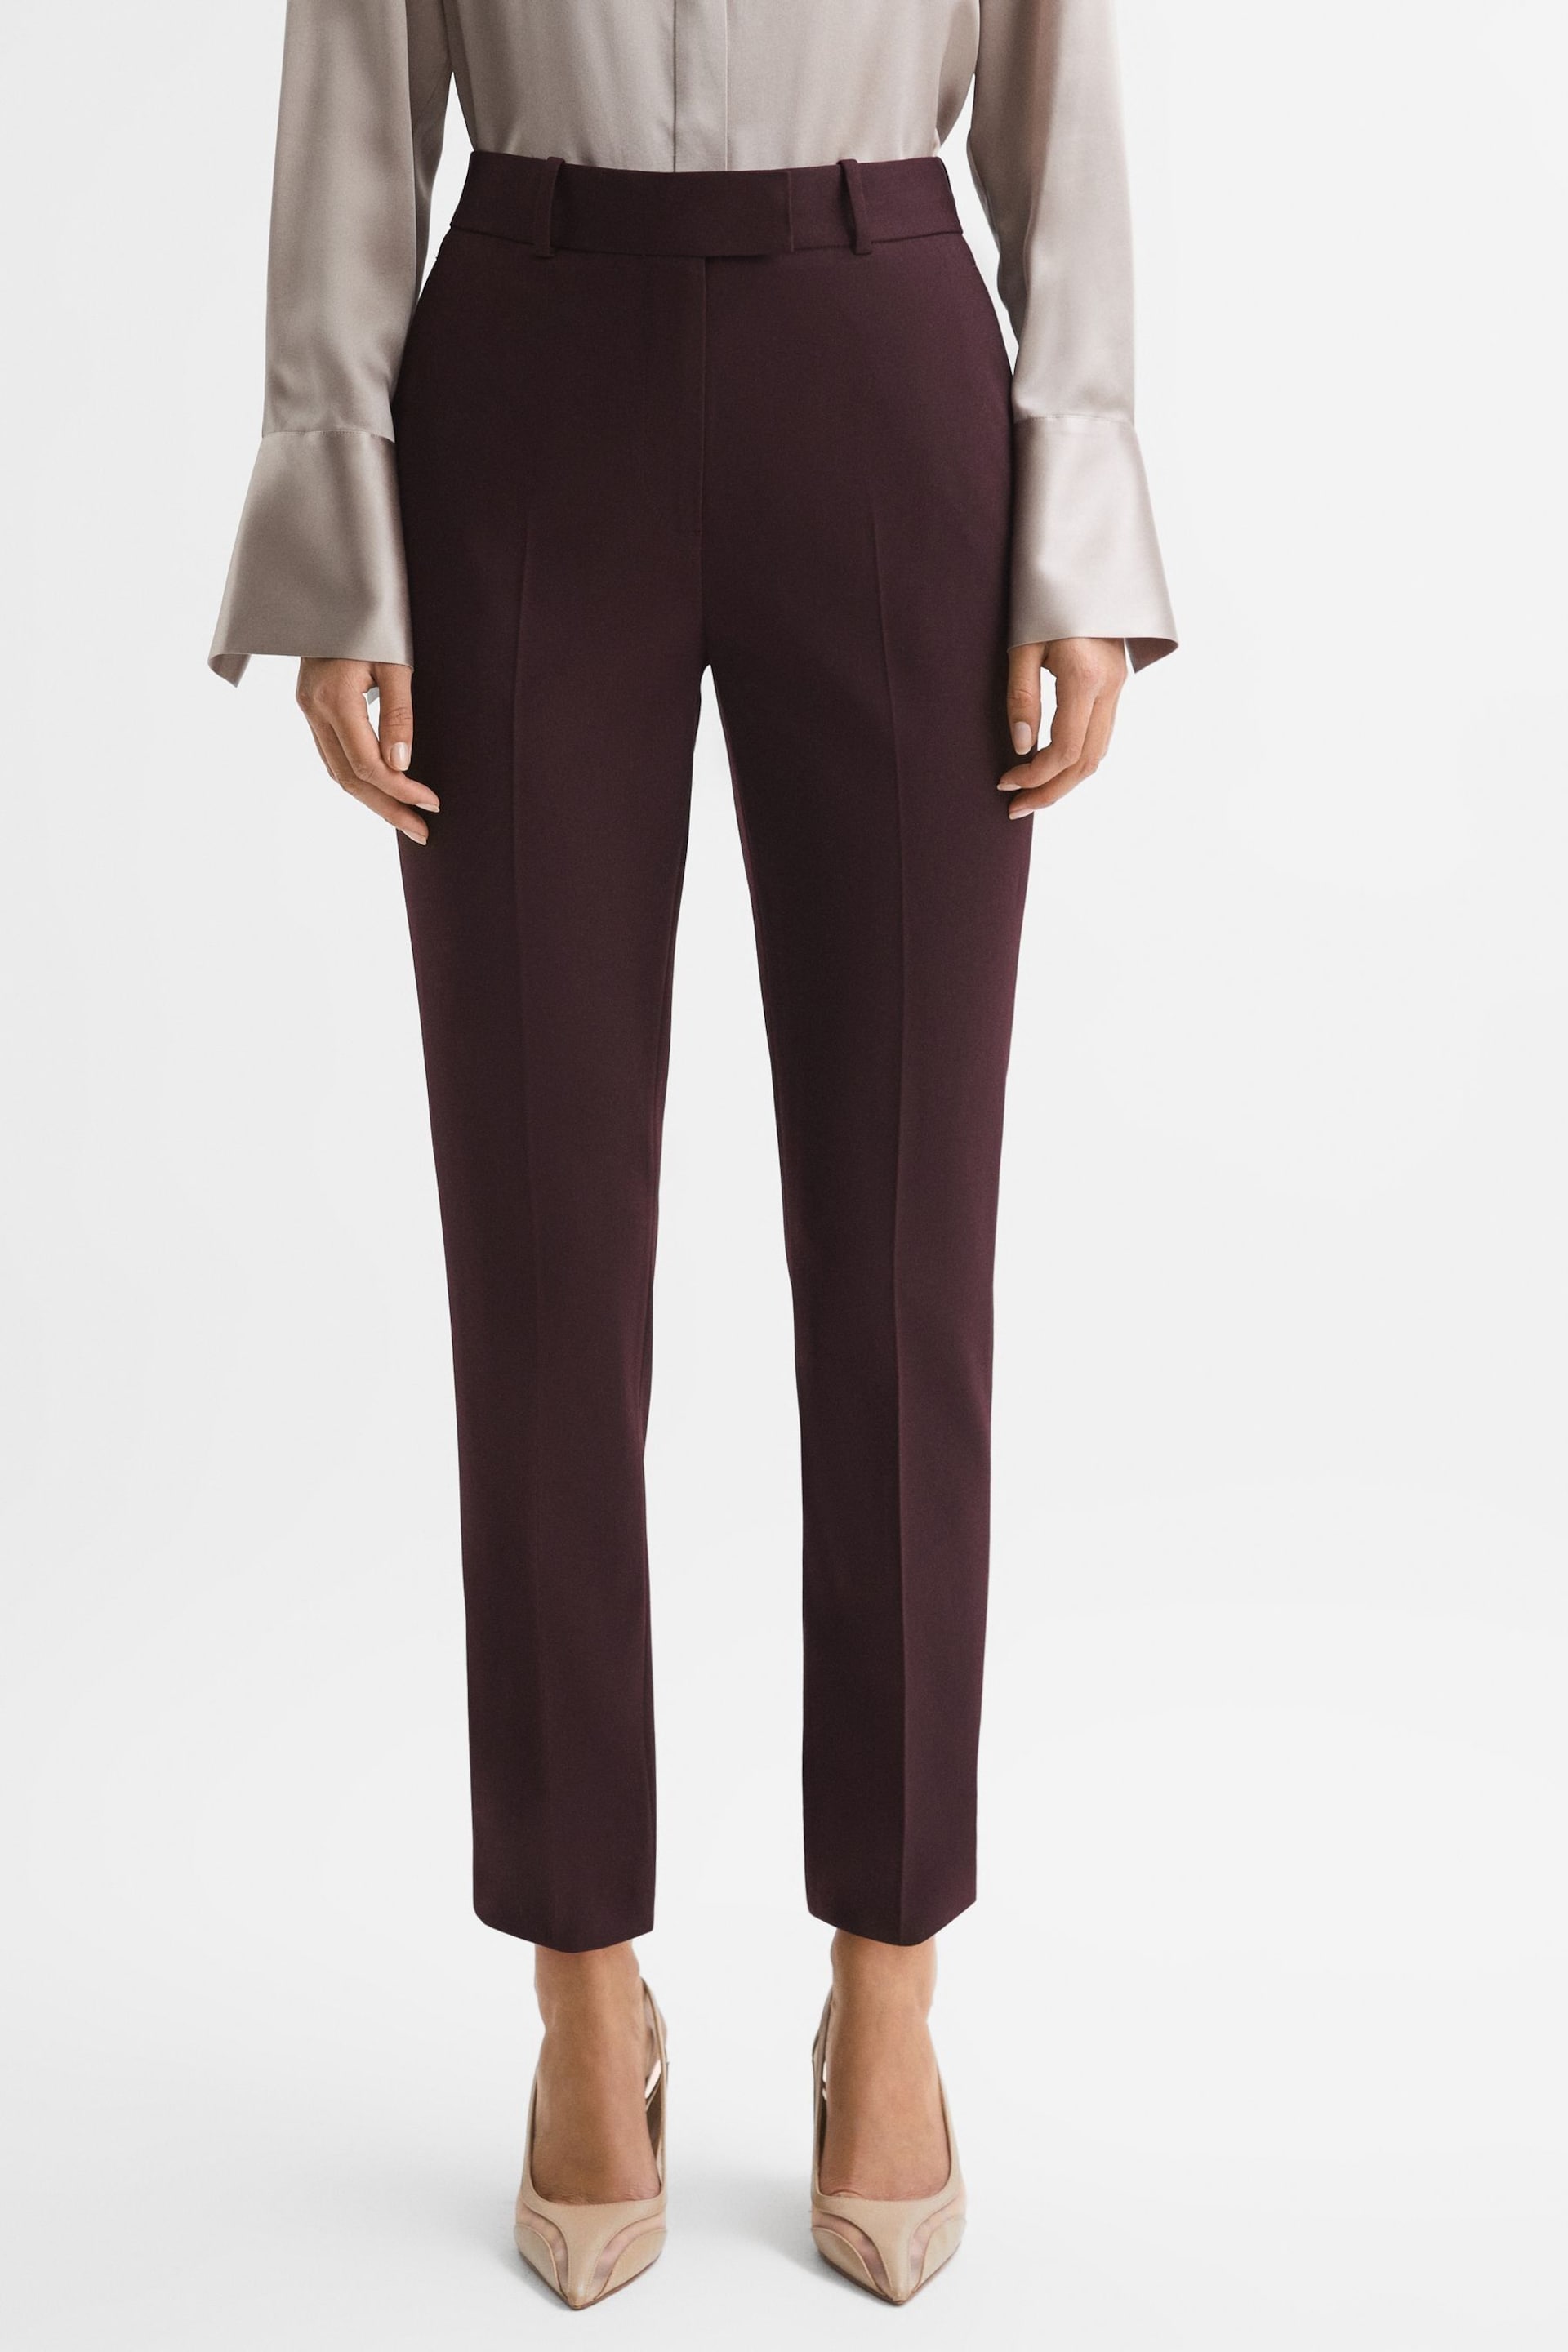 Reiss Berry Jade Slim Slim Fit Wool Blend Mid Rise Suit Trousers - Image 3 of 5